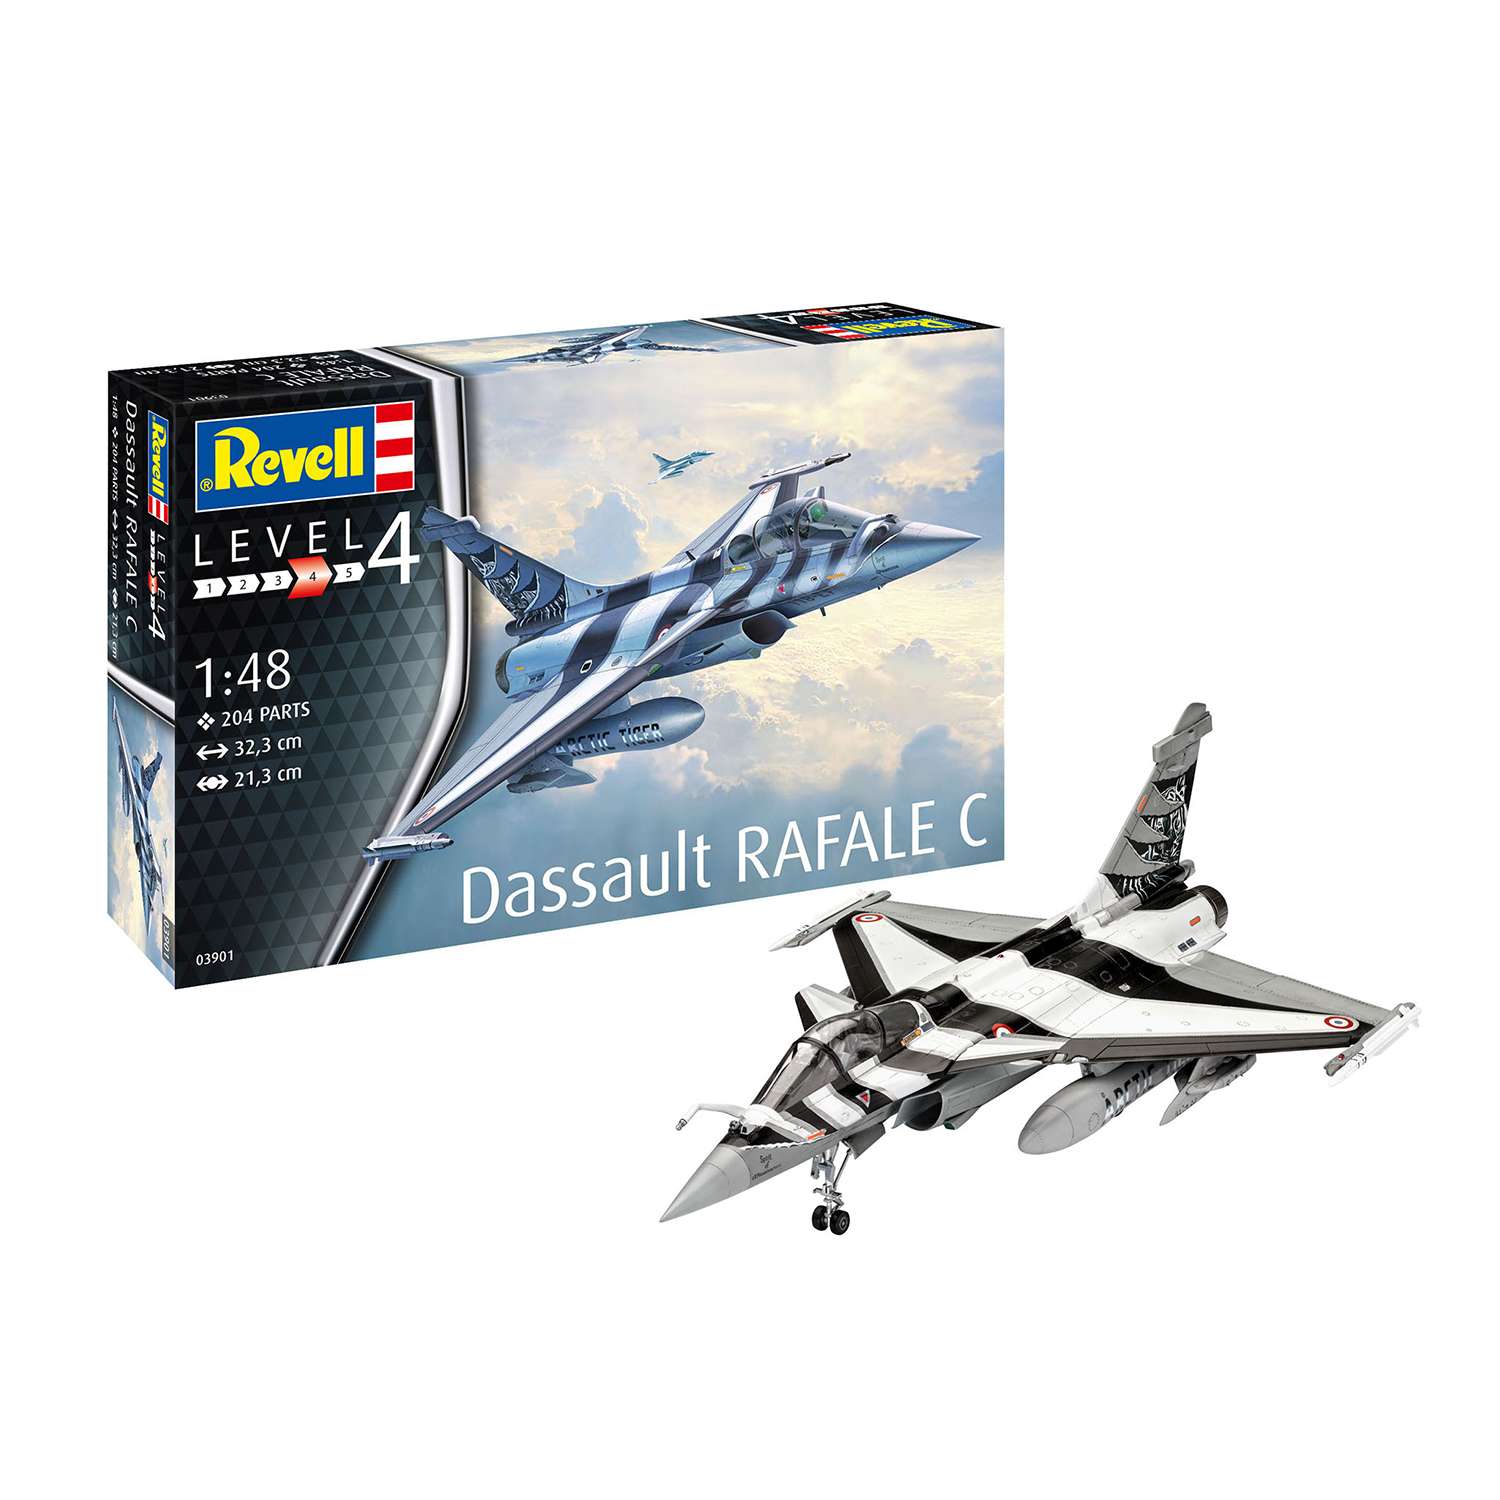 Сборная модель Revell Многоцелевой истребитель Dassault Rafale C 03901 - фото 1